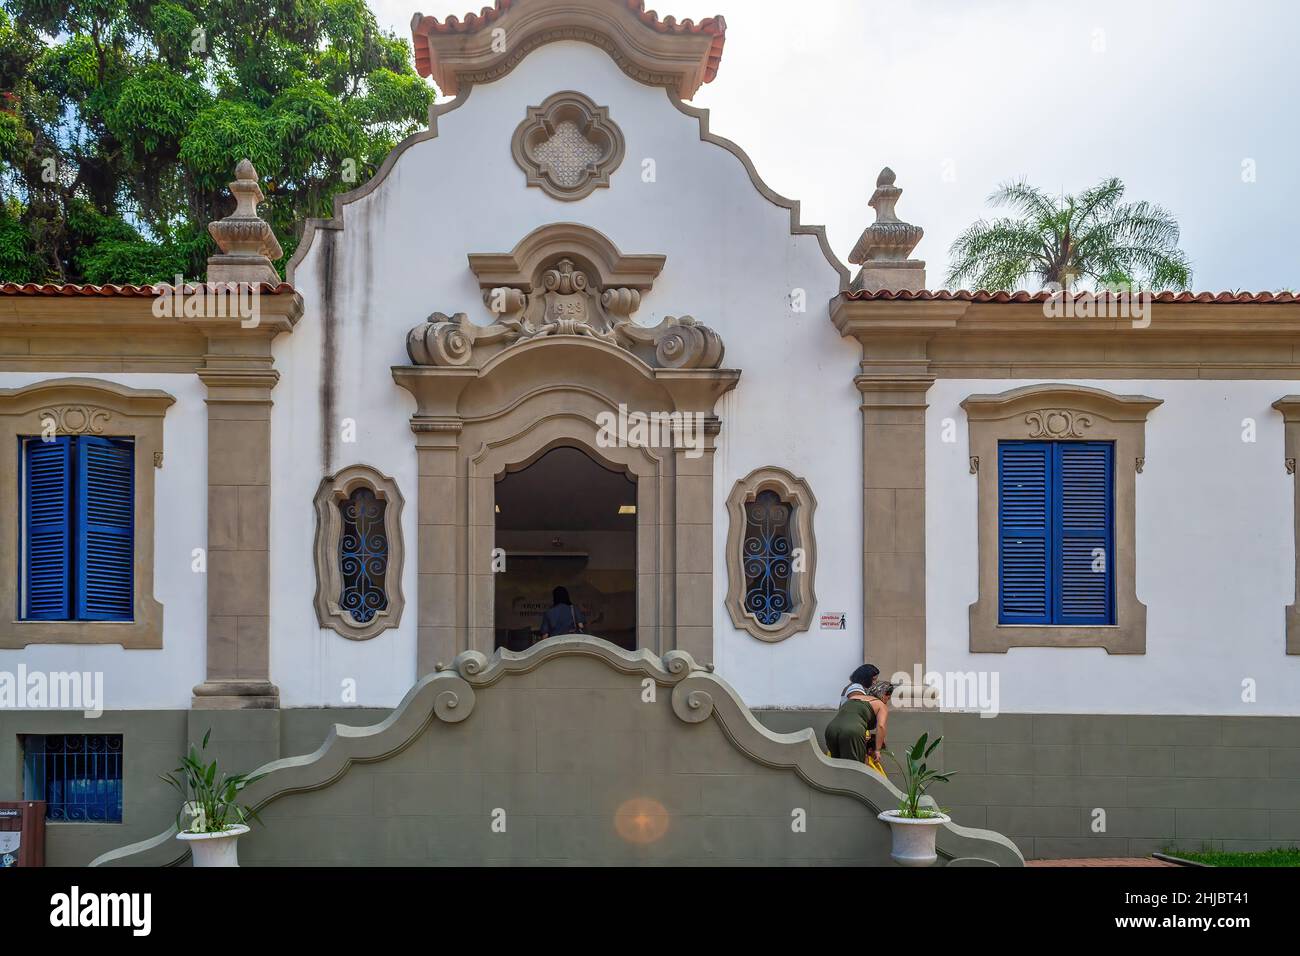 Fassade der ehemaligen Kaiserlichen Schule, derzeit ein Ausstellungszentrum in Quinta da Boa Vista, die ein öffentlicher Park von großer historischer Bedeutung ist loc Stockfoto